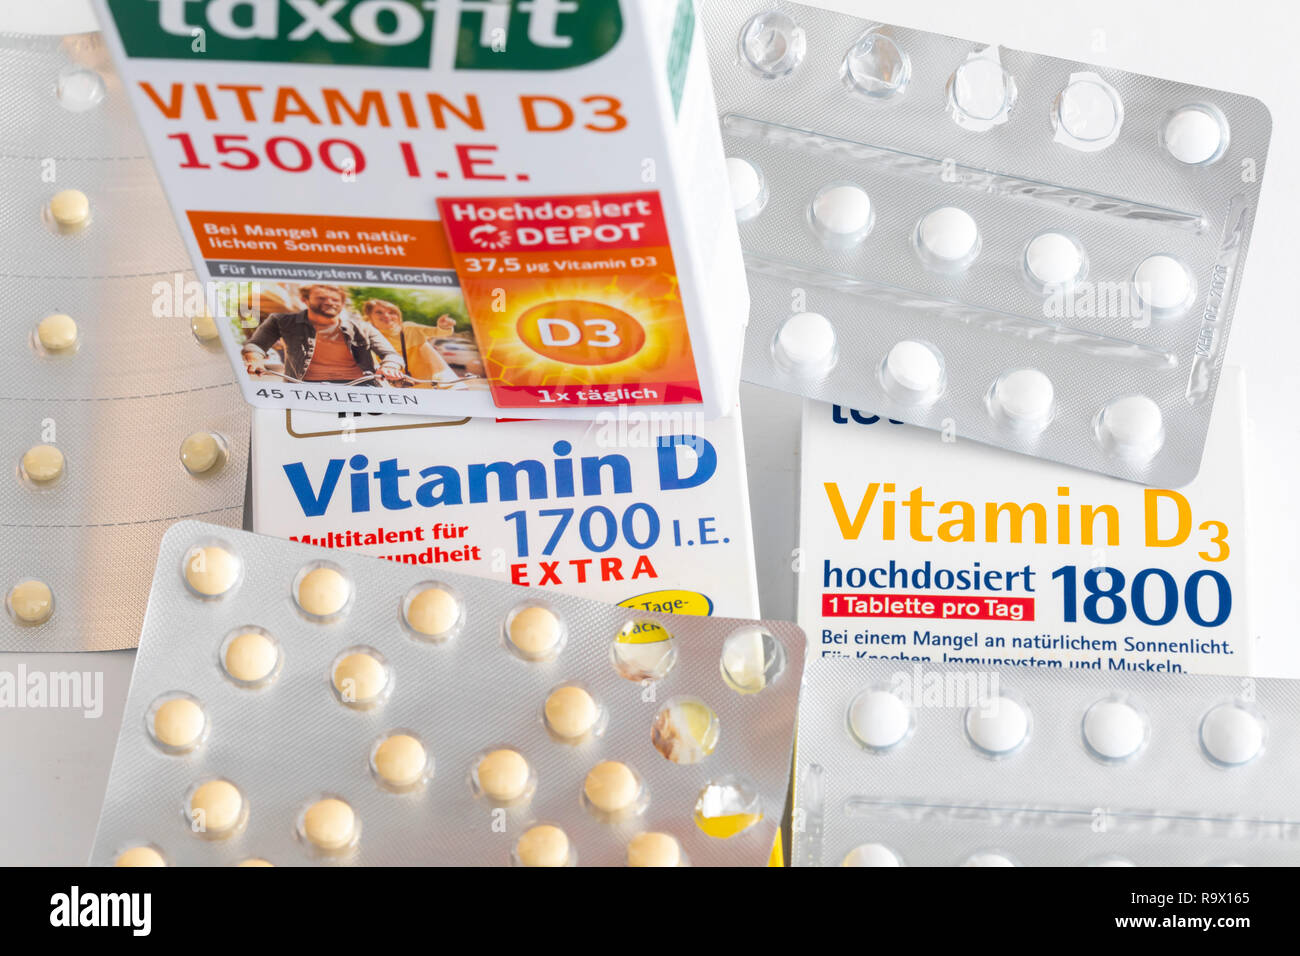 Vitamin-D-Tabletten Packungen, das Präparat soll den Vitamin-D-Mangold, durch geringer Sonneneinstrahlung, zum Beispiel im Winter, ergänzen, Stockfoto